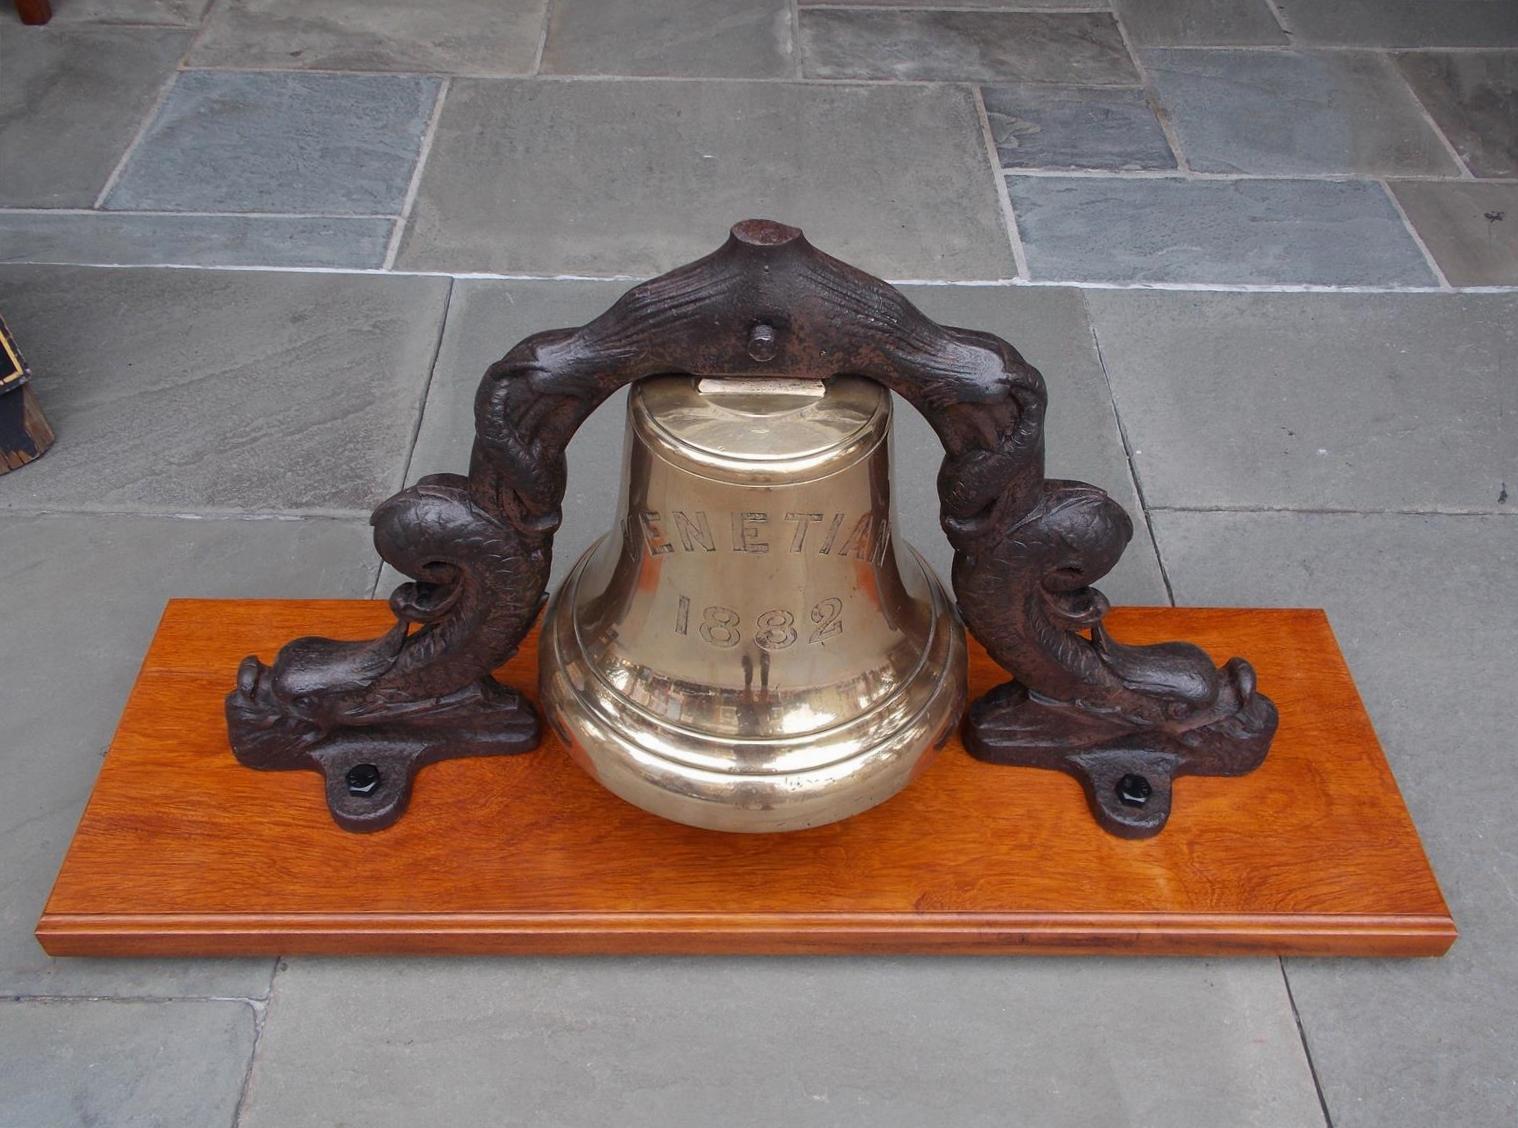 yoke of a bell